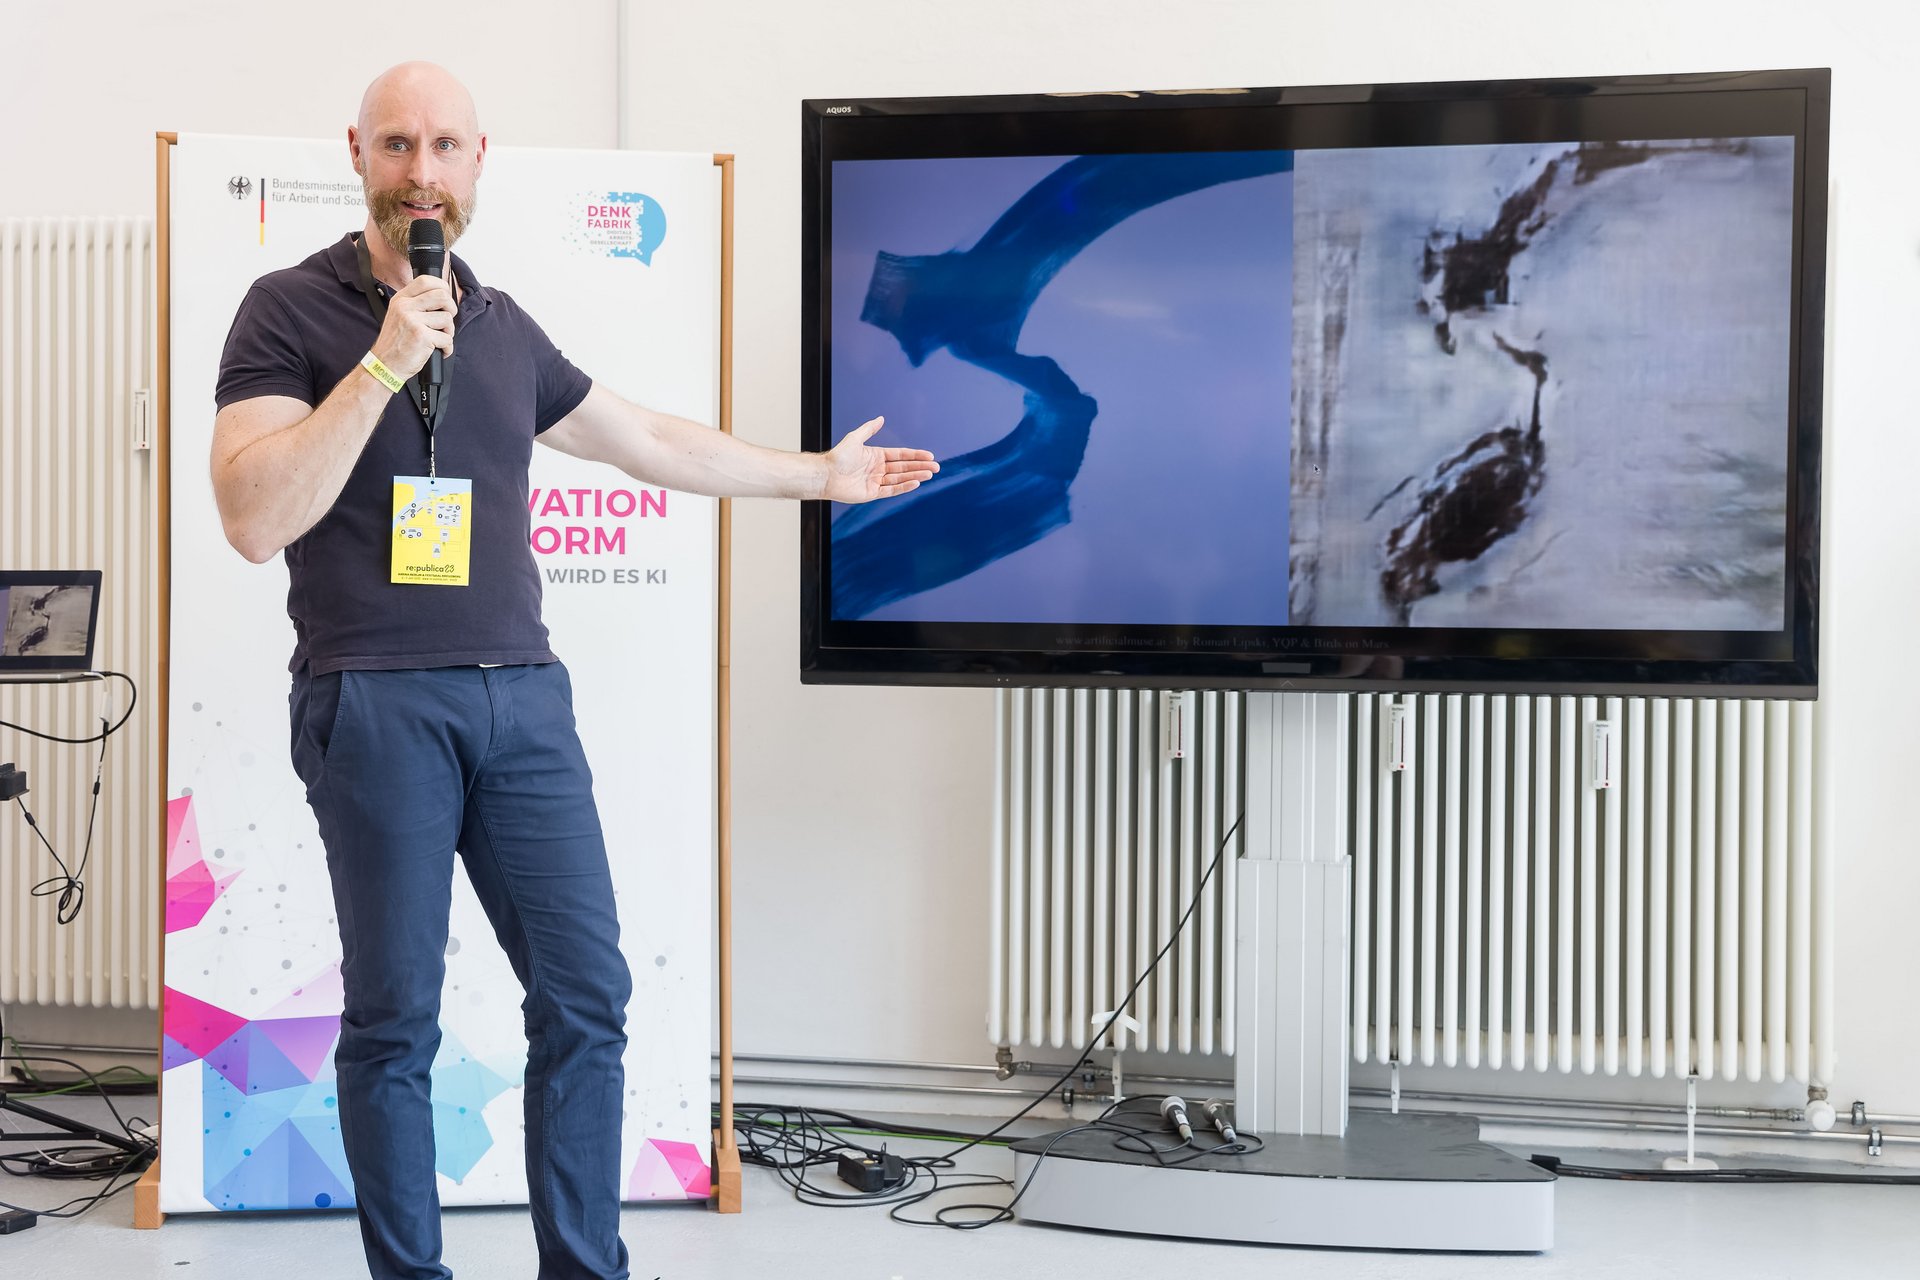 Künstler Roman Lipski hält ein Mikrofon in der Hand und zeigt auf einen Bildschirm